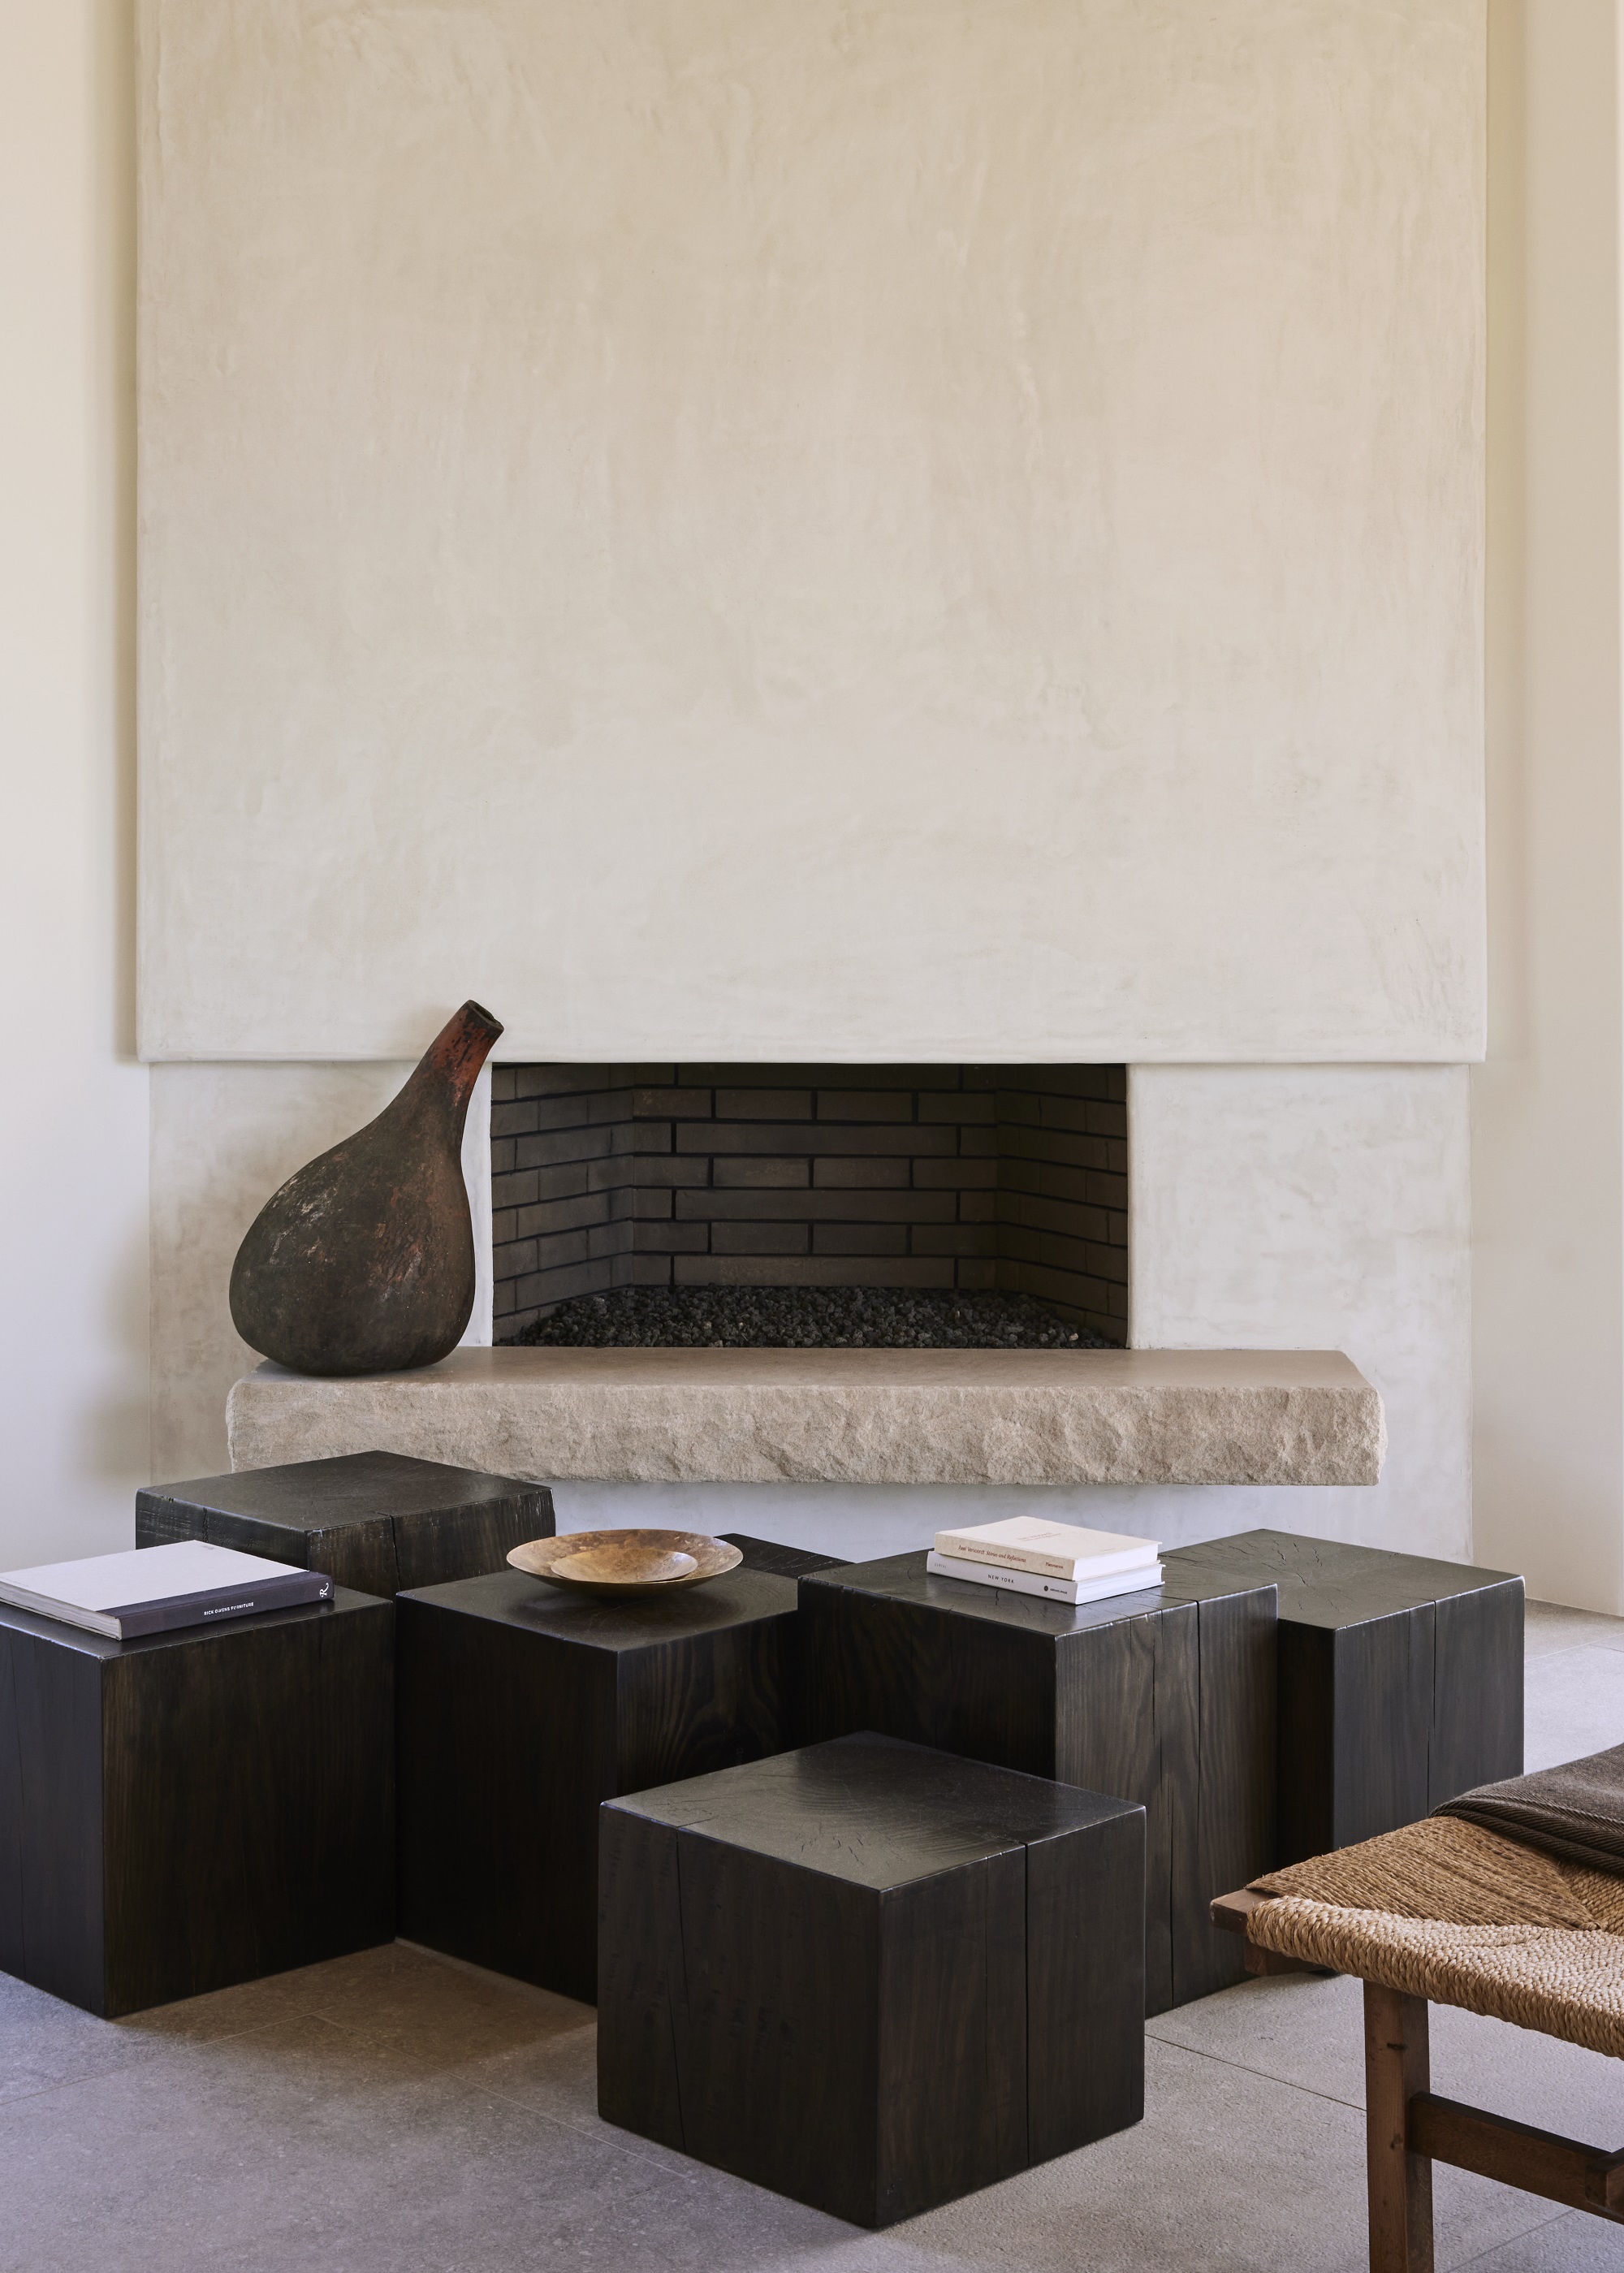 A minimalist fireplace